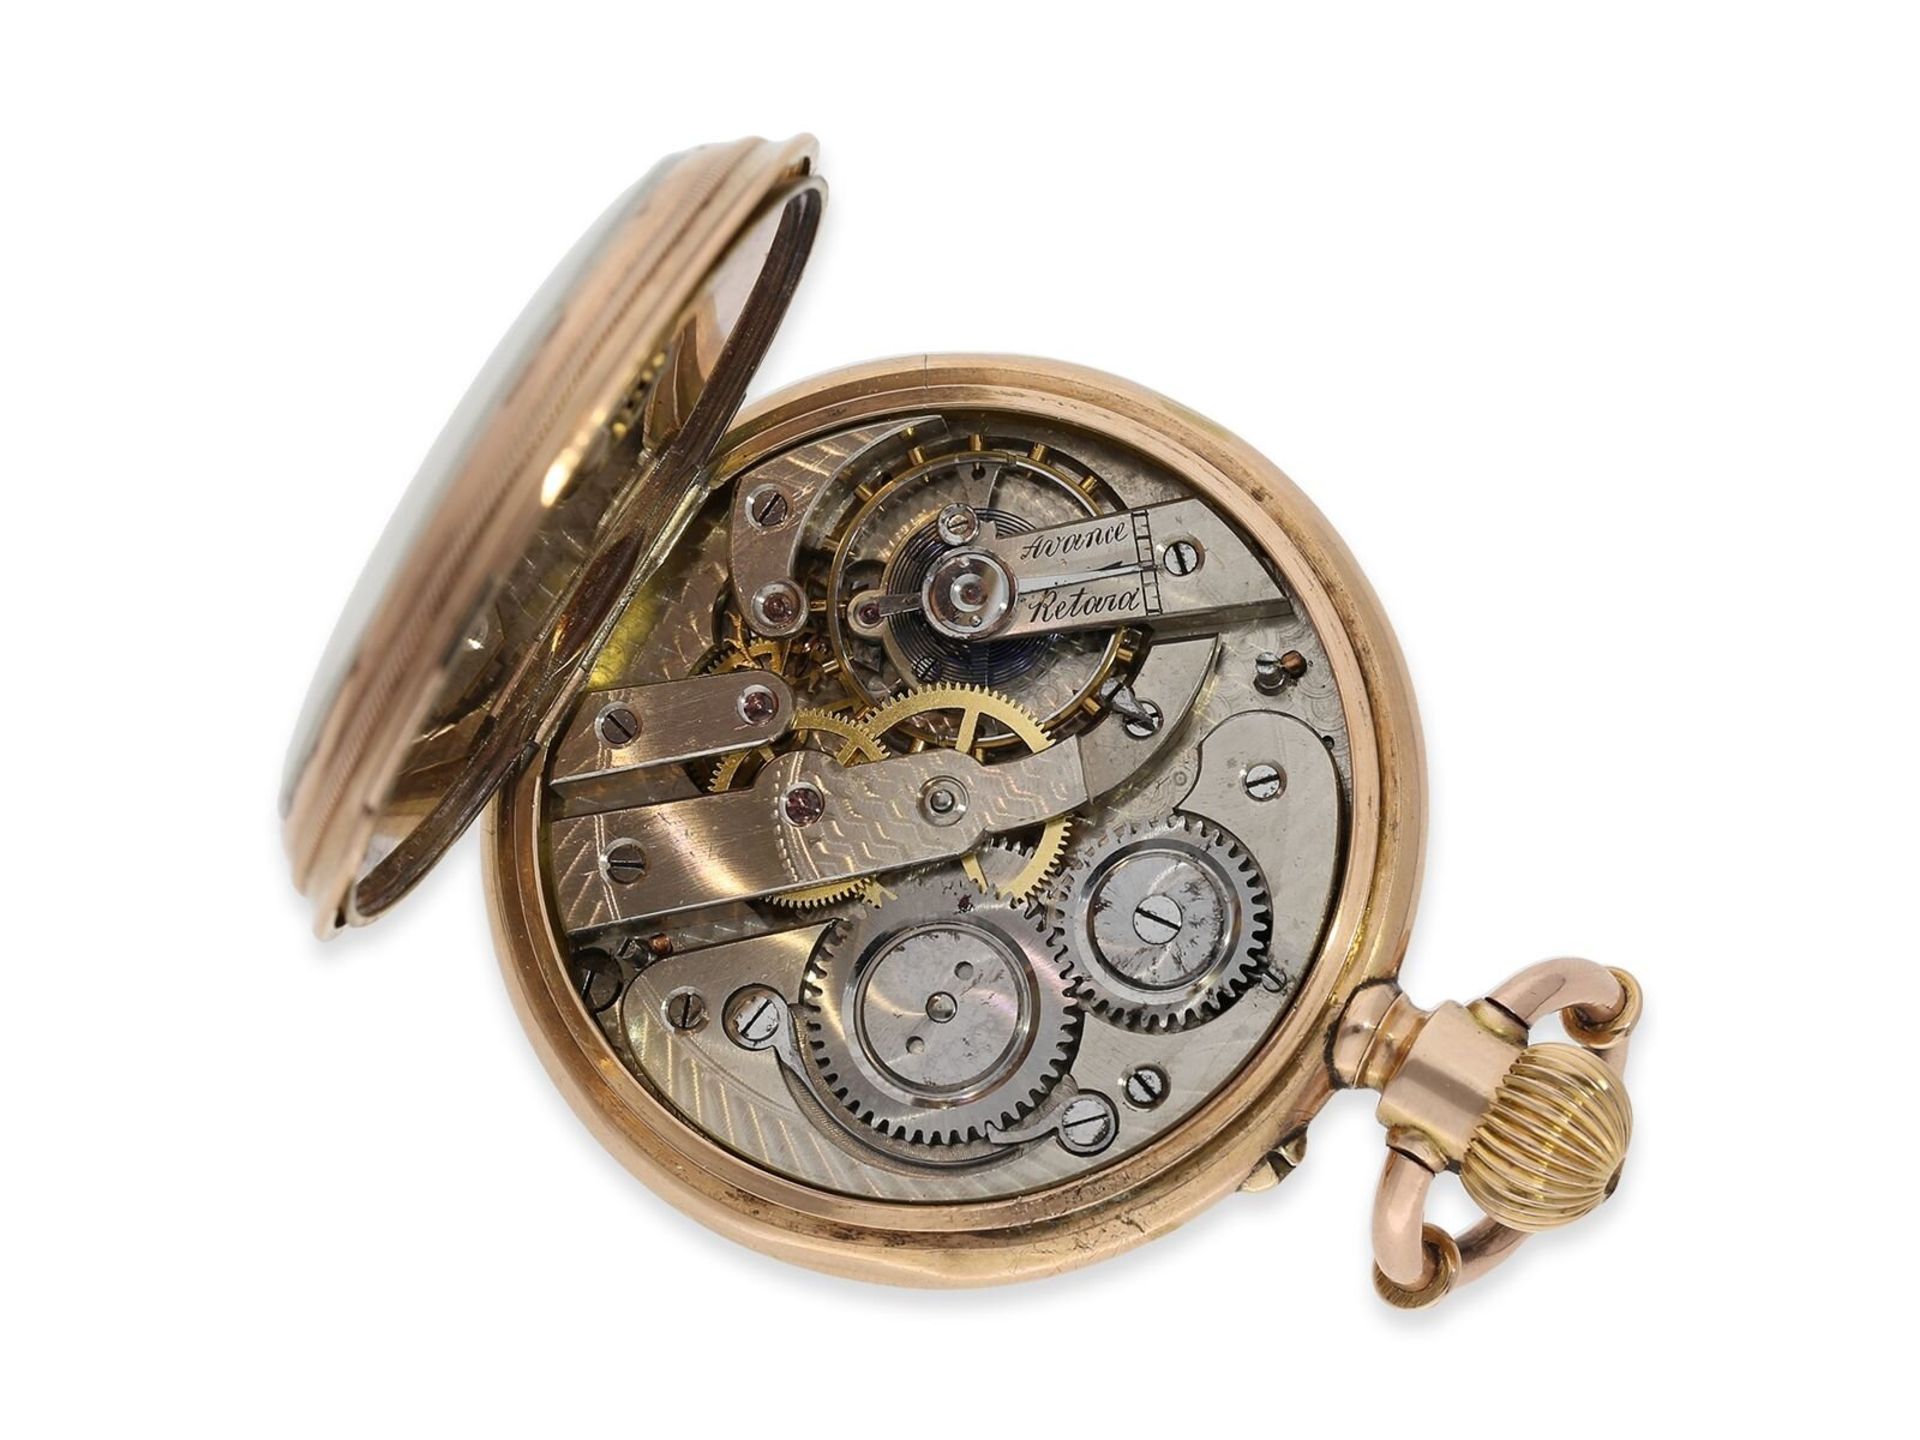 Taschenuhr: seltene doppelseitige Kalenderuhr mit Mondphase, Patent "Calendrier", ca. 1880 - Bild 3 aus 9